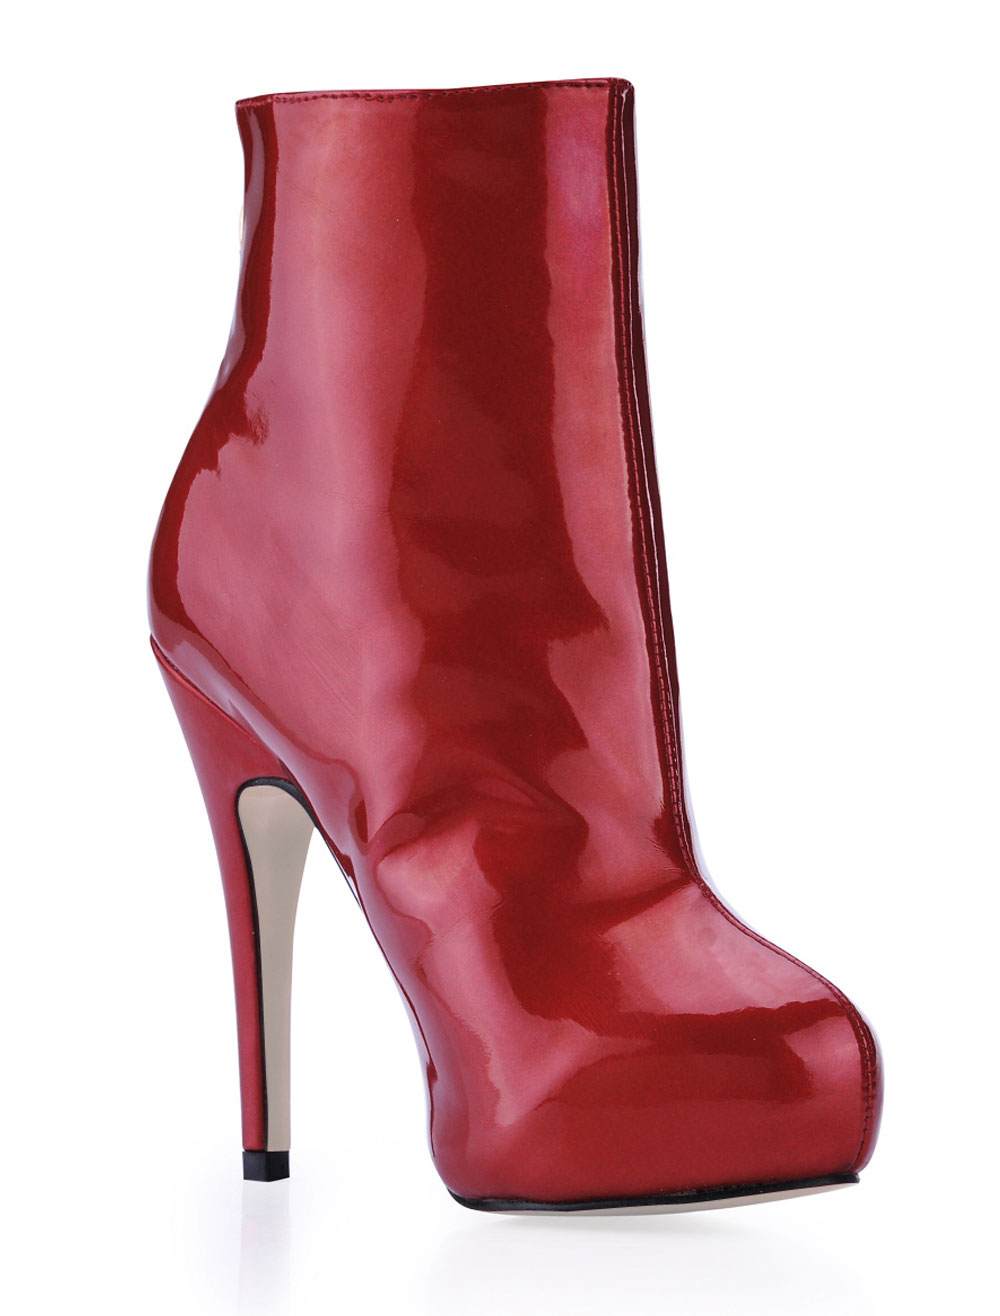 Burgundy Zipper Patent Woman's High Heel Booties - Milanoo.com